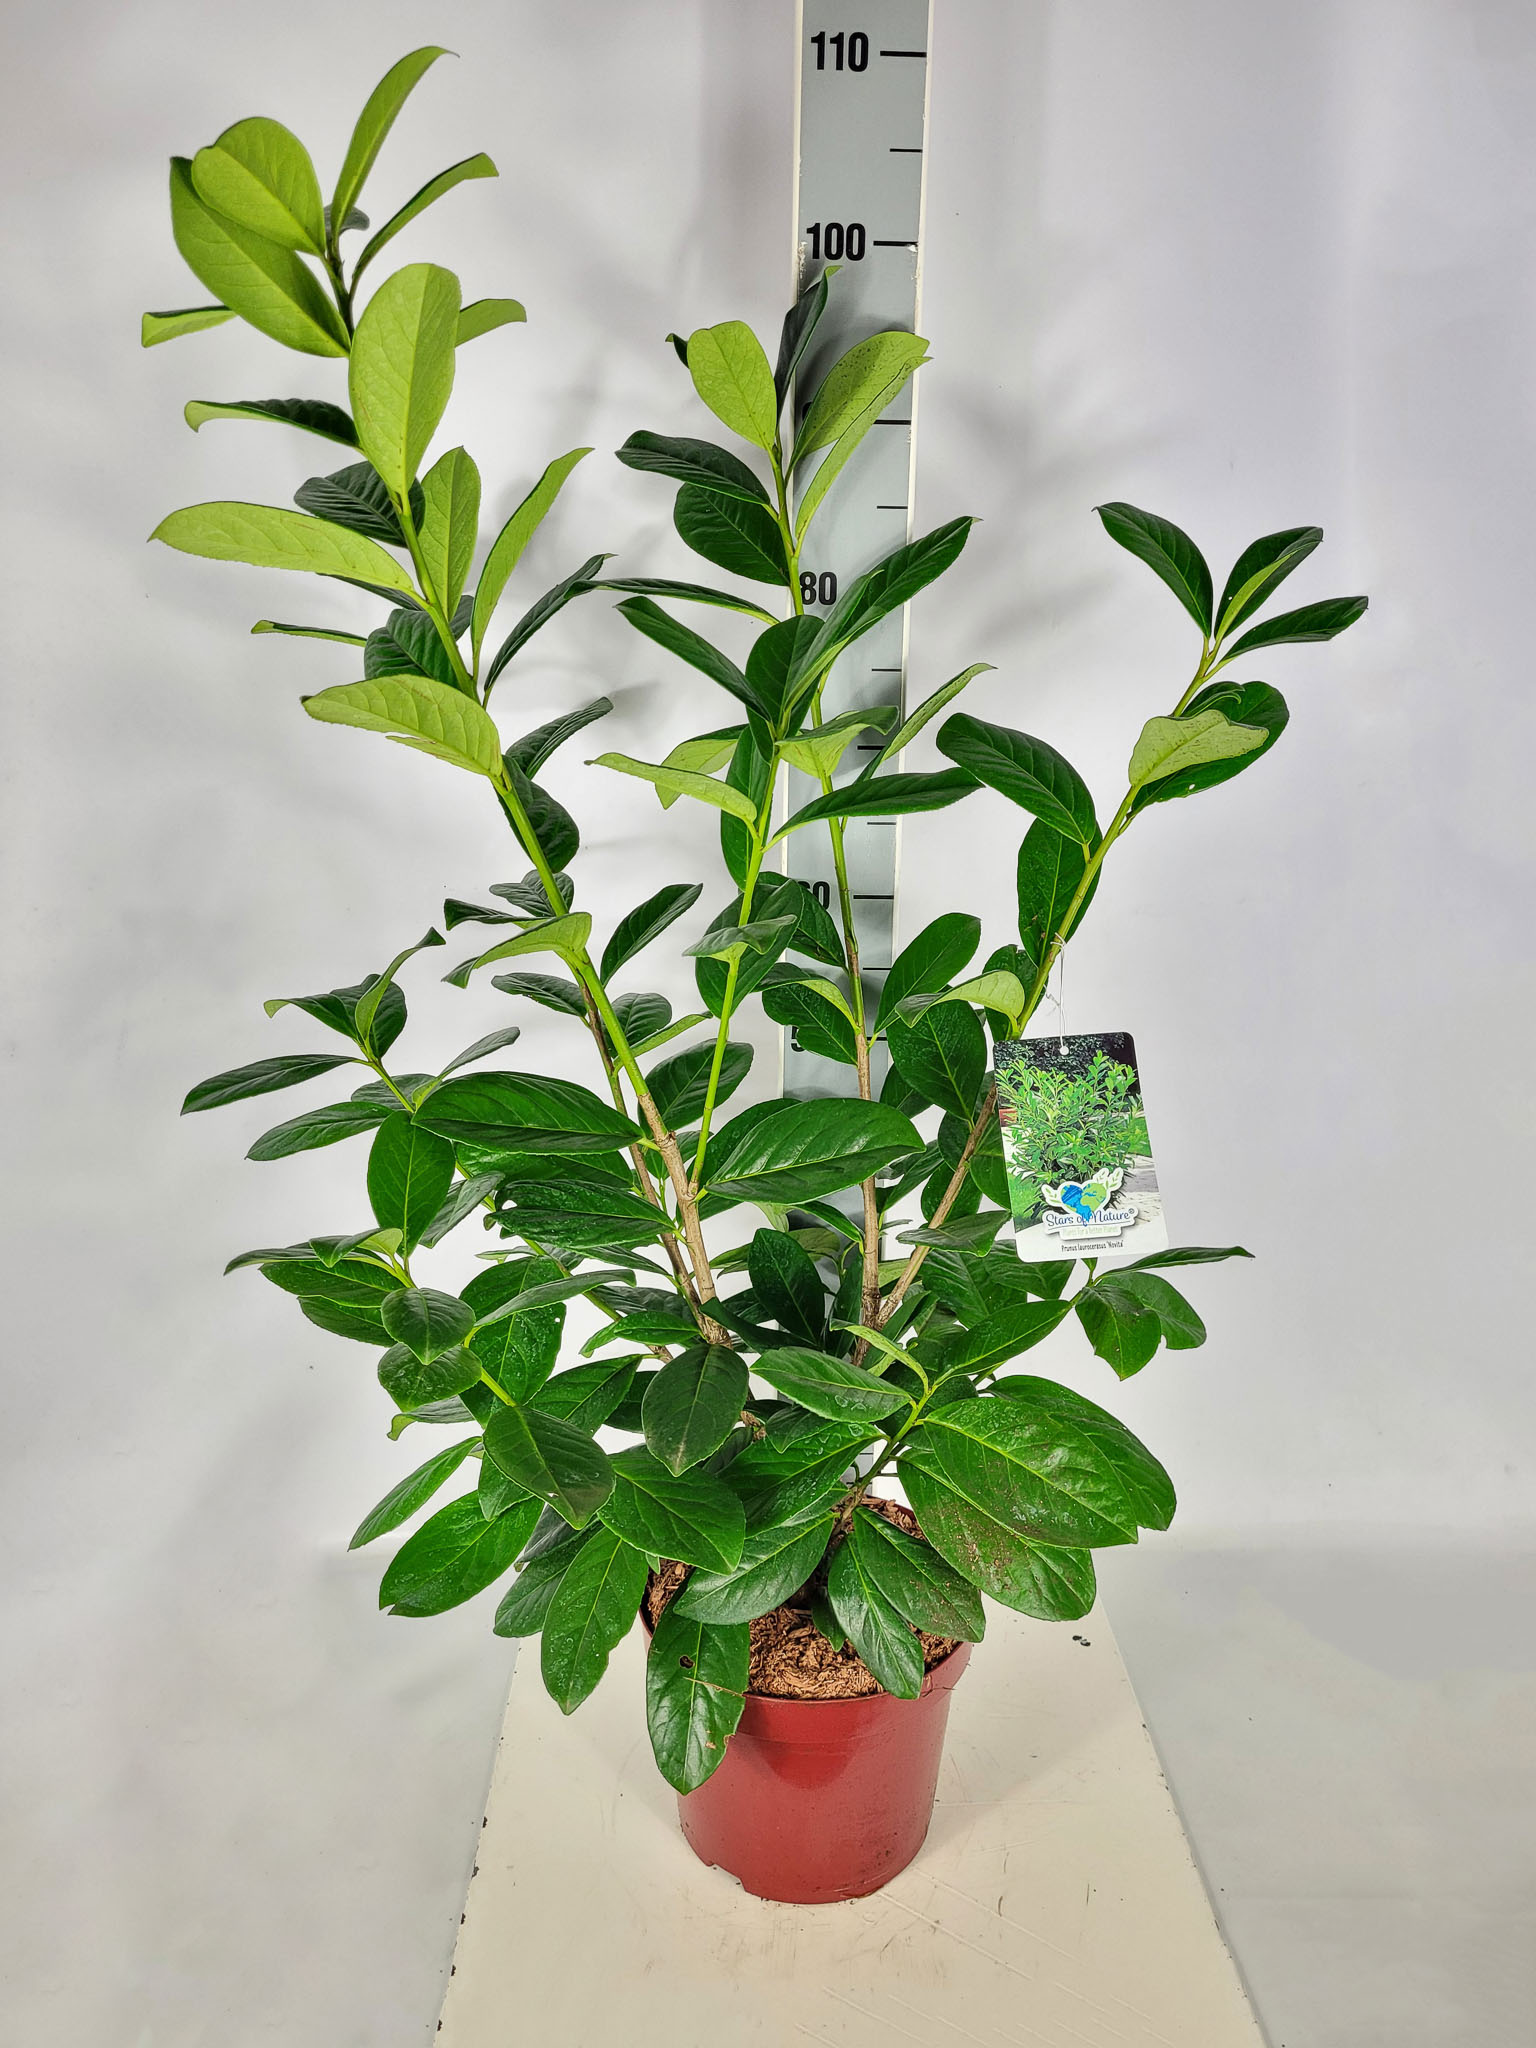 Prunus lauroc.'Novita' C 5 40- 60, 900 Stück lieferbar, Beladung 2x25, Highlight: schöne Heckenware!